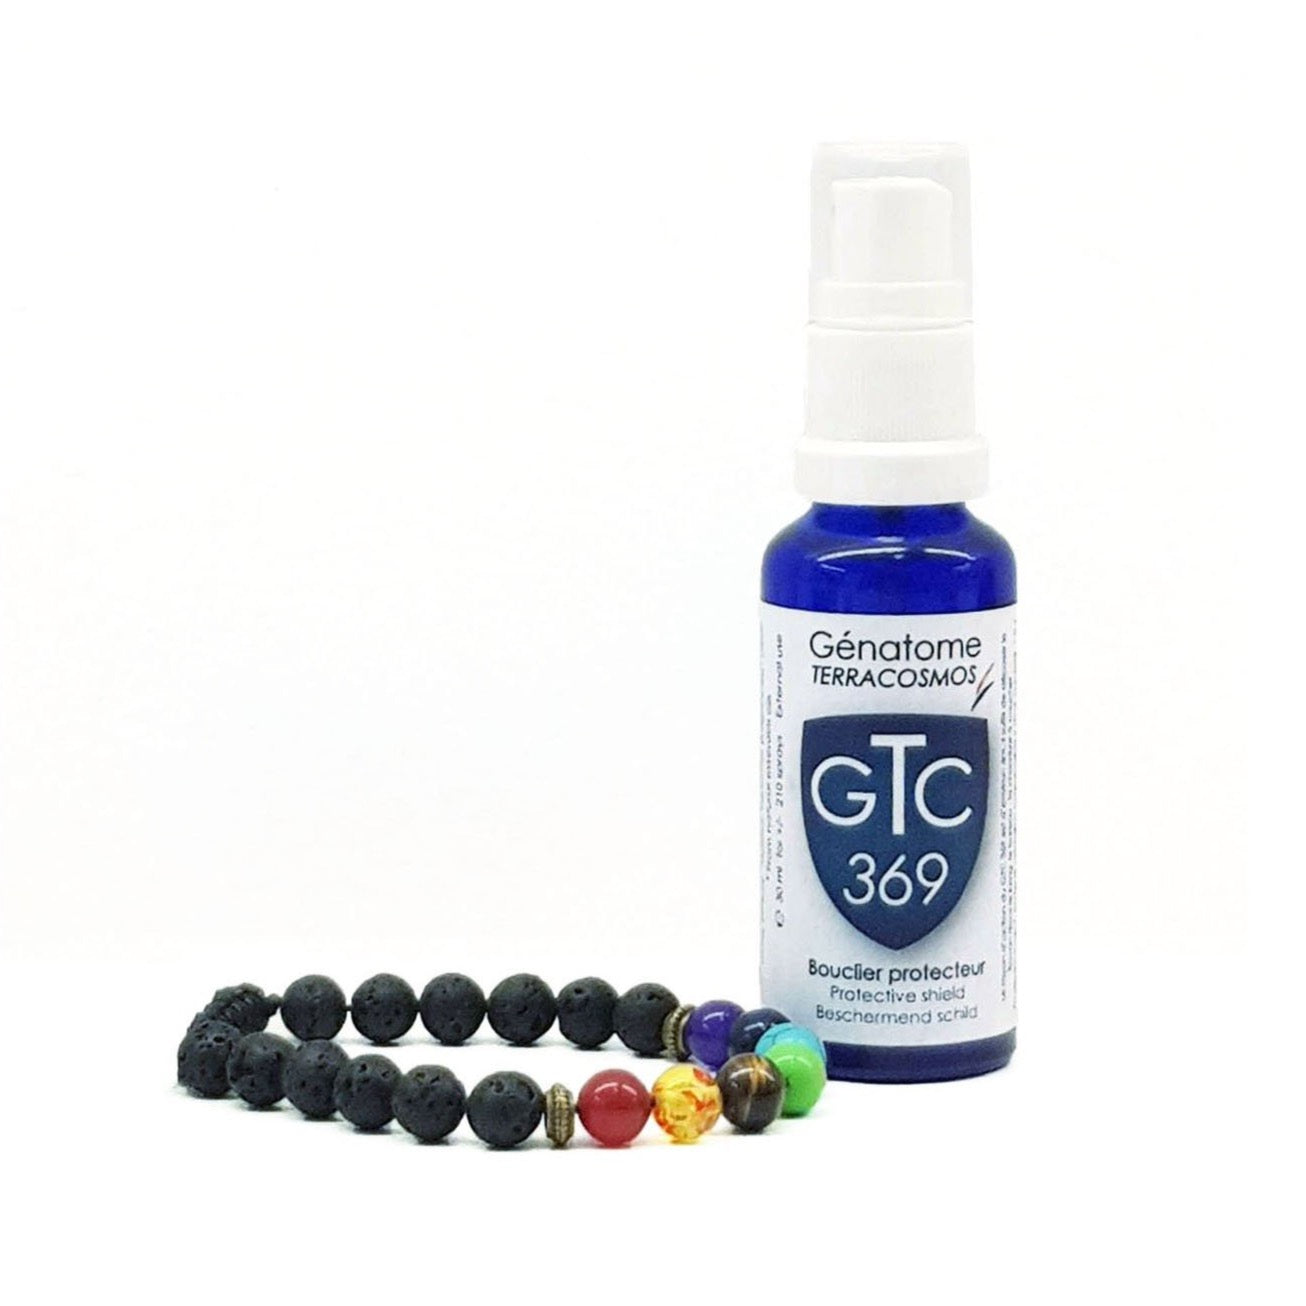 Genatome GTC 369 - Protection électromagnétique - kit complet